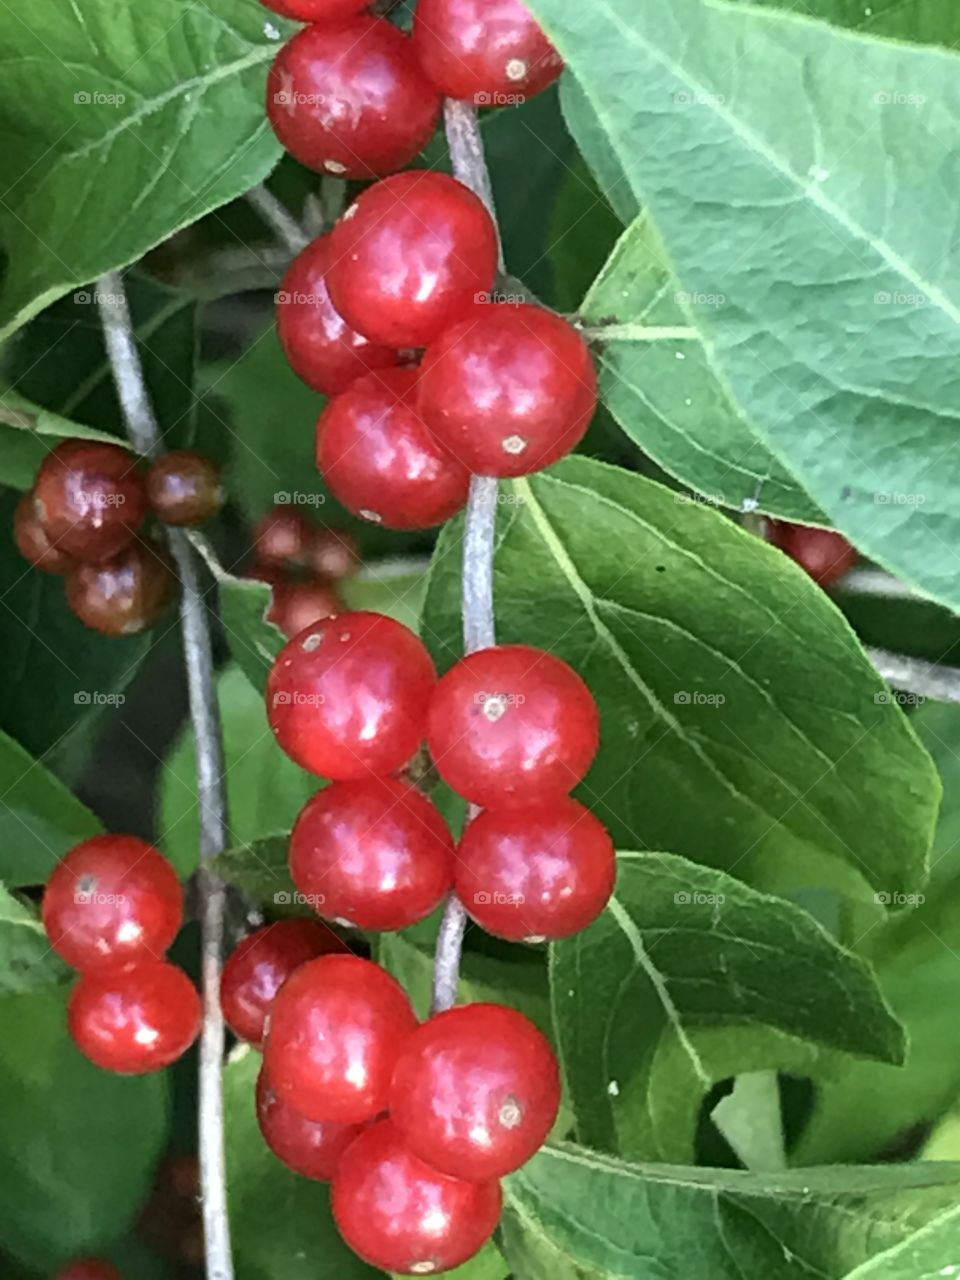 Common Honeysuckle, Clusters of wild red berries